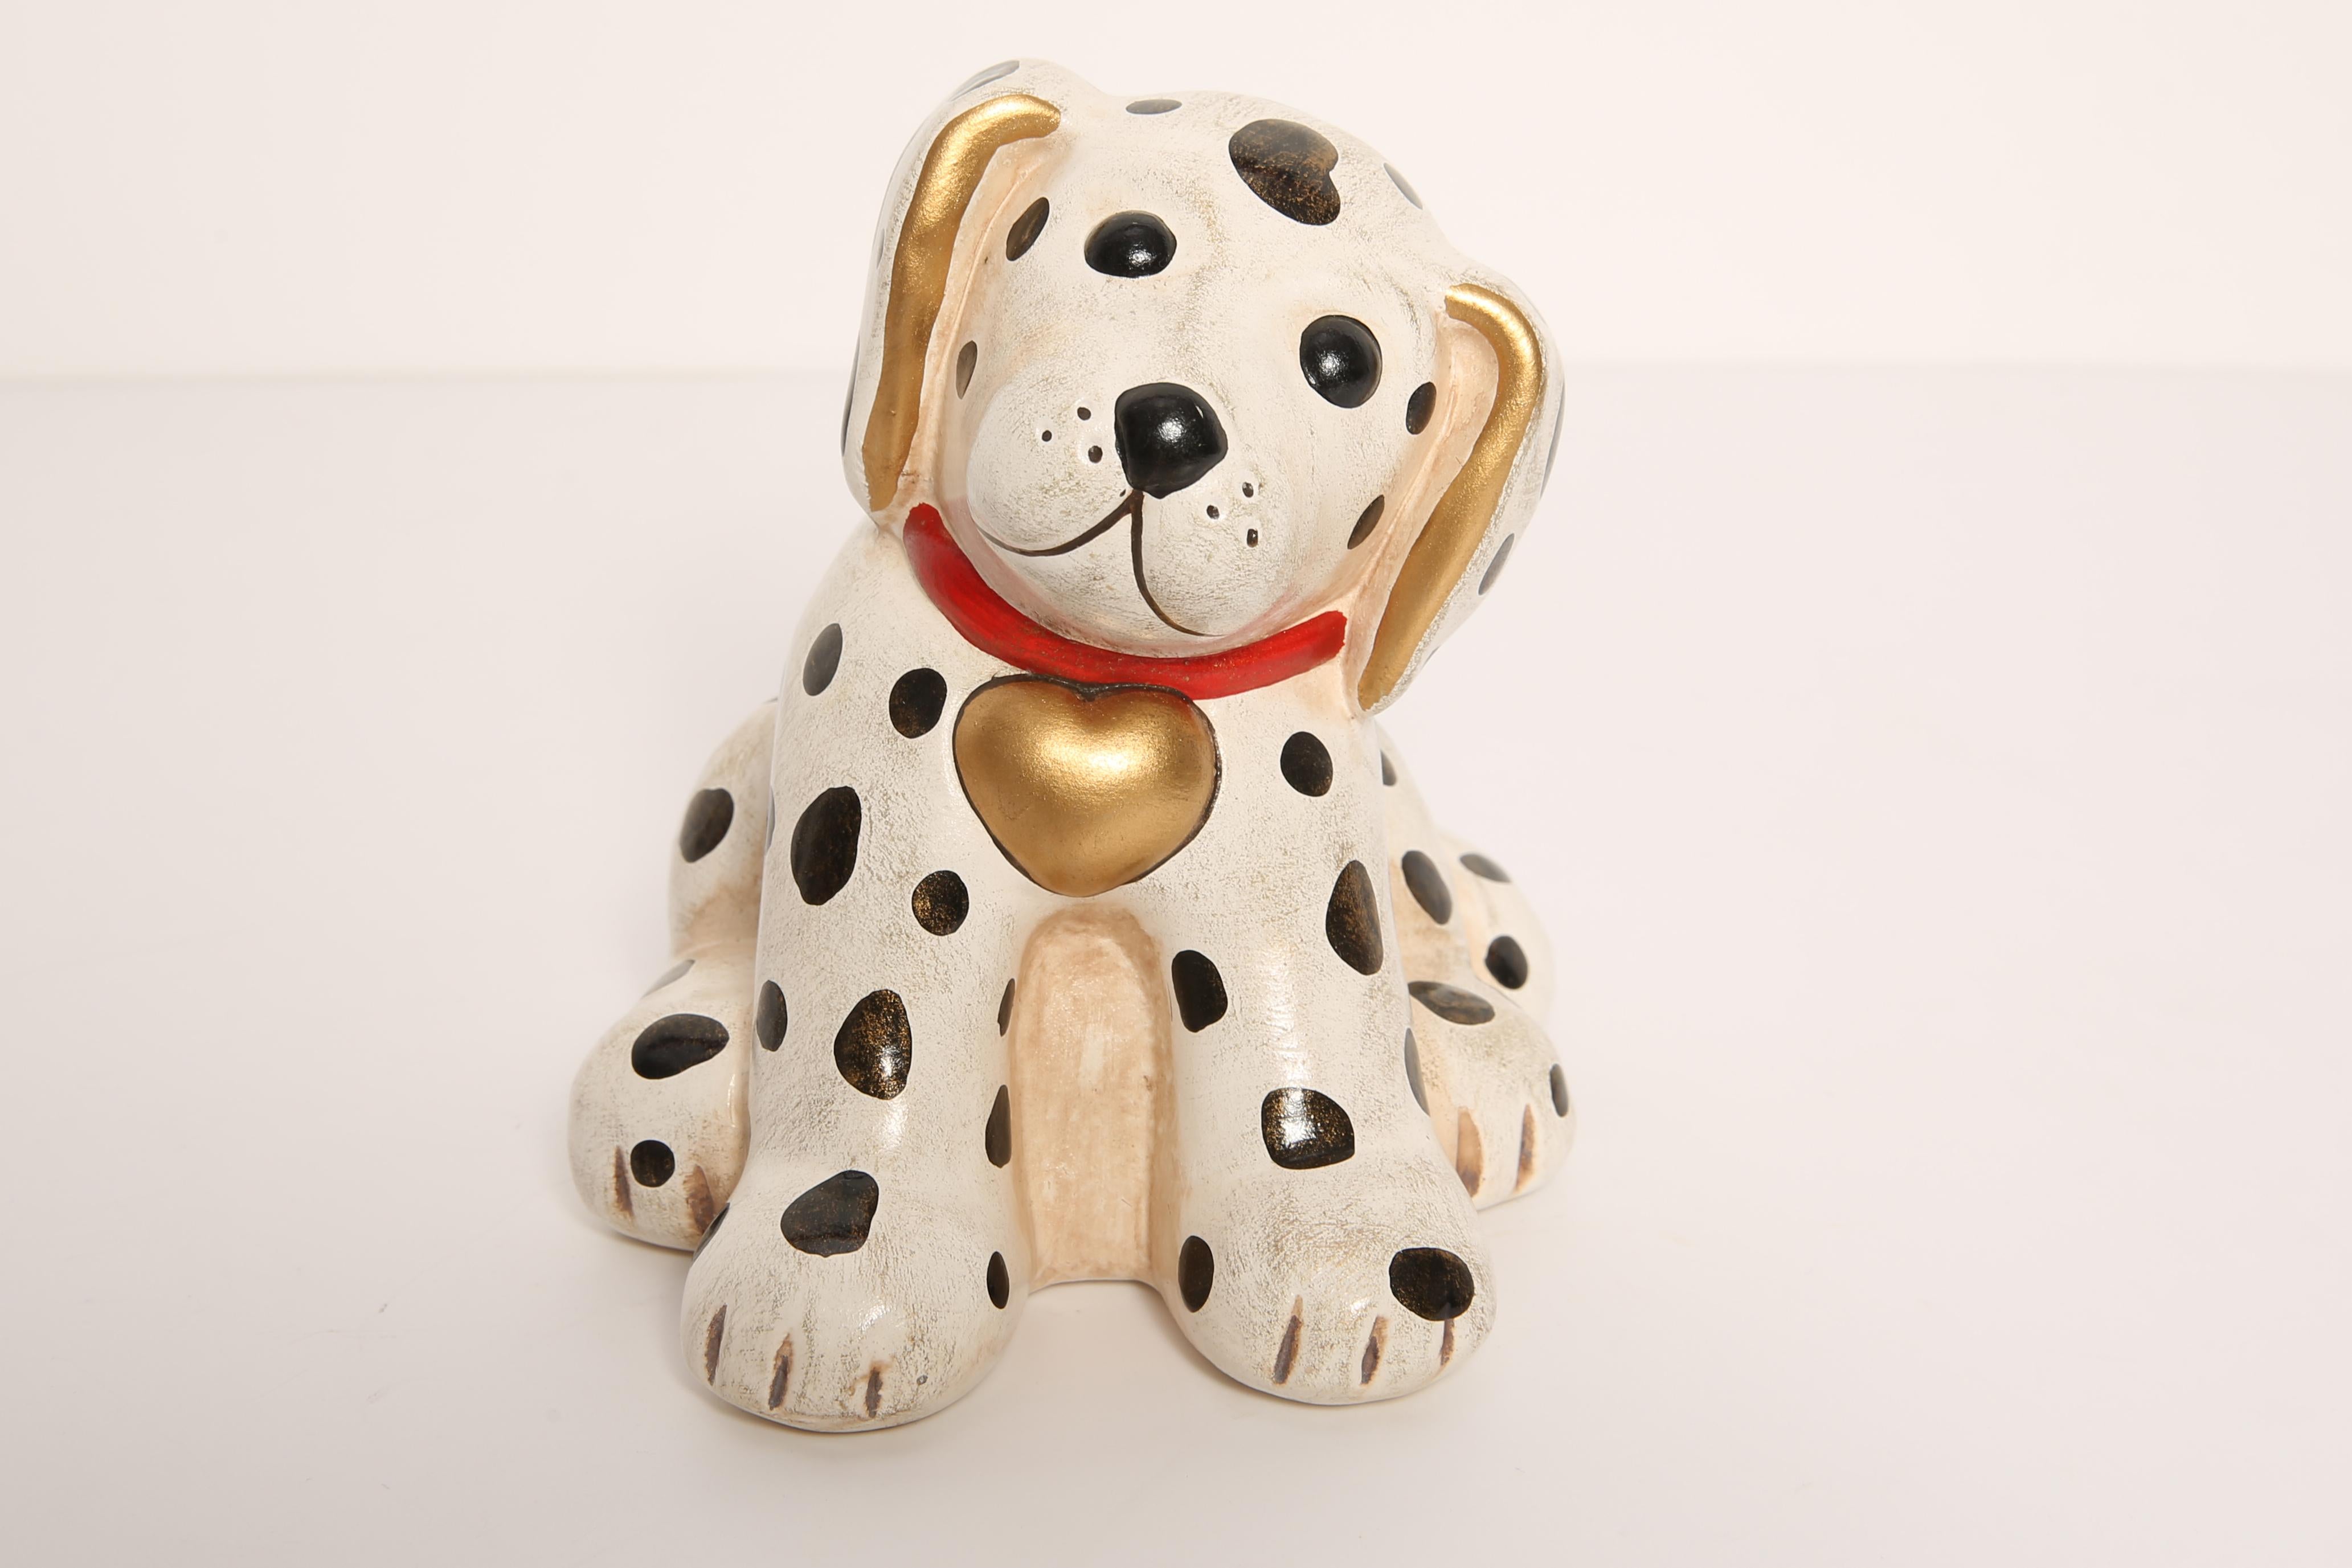 Céramique peinte, bon état d'origine vintage. Une sculpture décorative magnifique et unique. La sculpture de chien dalmatien a été produite par l'usine de Thun en Italie.